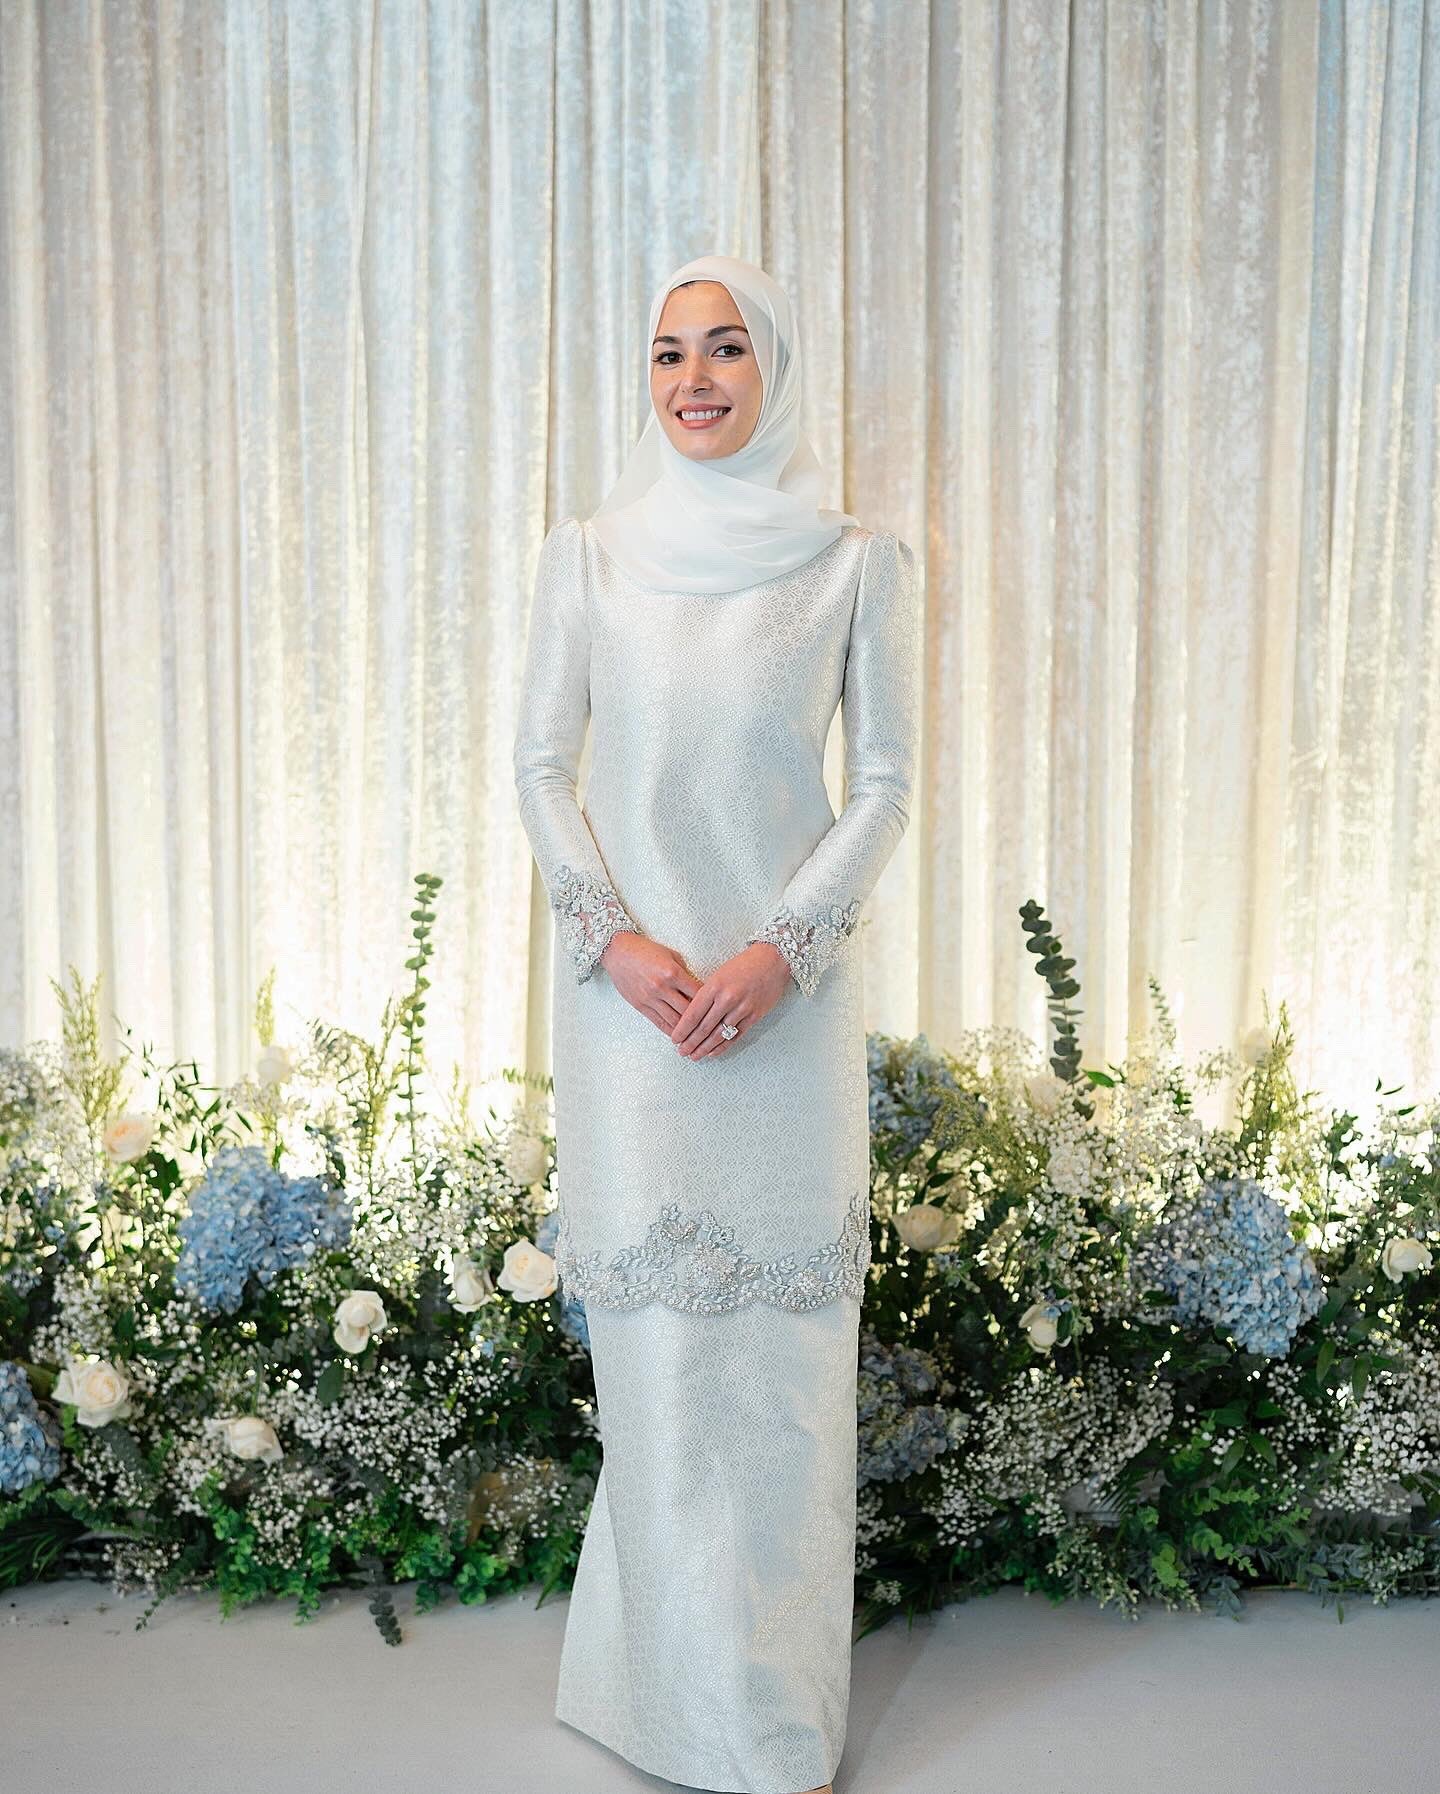 Cô dâu Anisha Rosnah Adam Isa-Kalebic mặc váy cưới của nhà thiết kế Teh Firdaus ngày 07/1. Ảnh: The National News